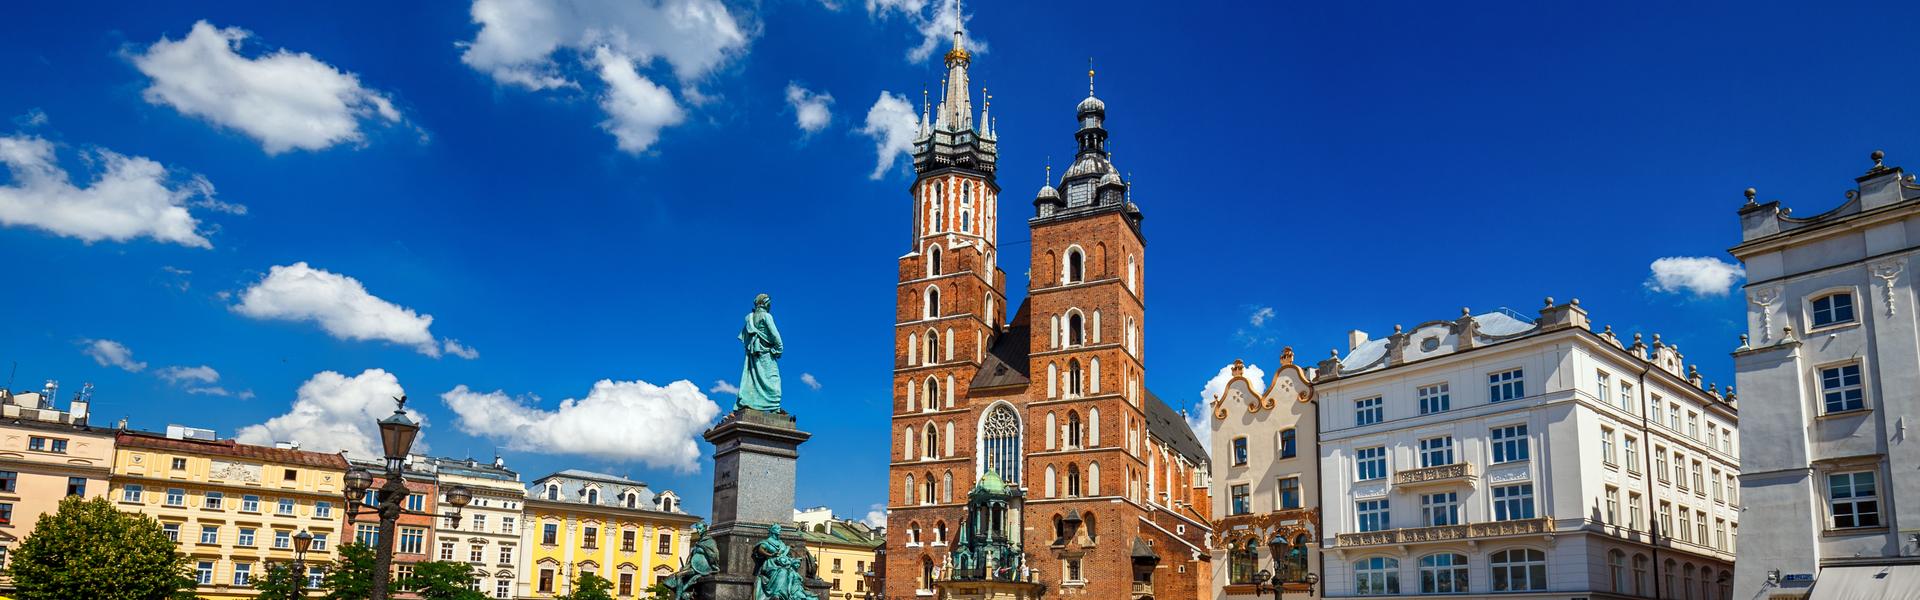 Изображение: Kościół Mariacki – jeden z najwspanialszych zabytków Krakowa i przykład sztuki gotyckiej. 800 lat historii